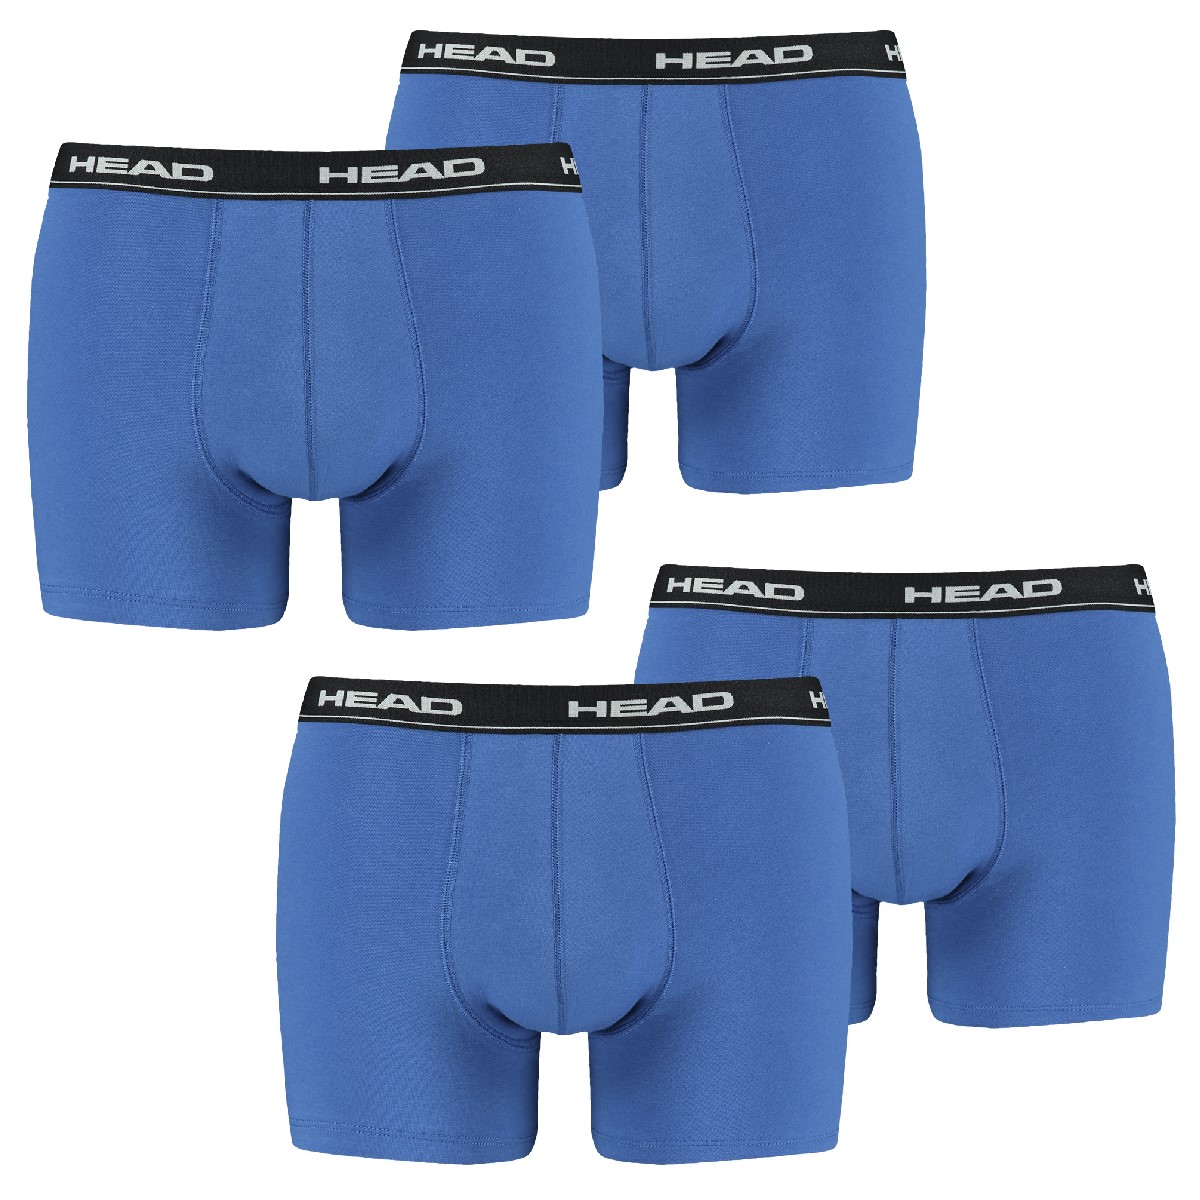 HEAD Herren Boxer Shorts Basic 2er Pack, mehrfarbig(Blue/Black),M